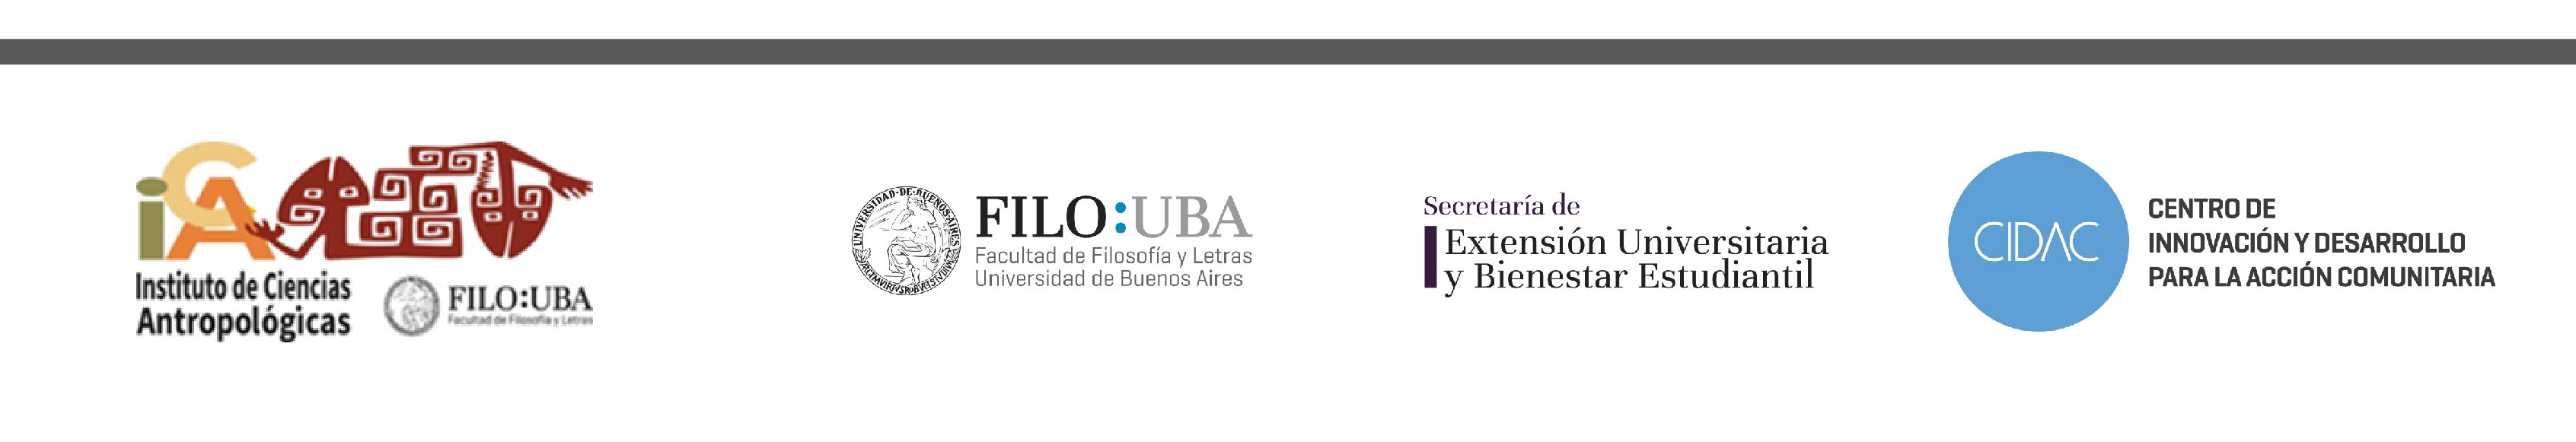 Banner con los logos institucionales del Instituto de Ciencias Antropológicas, Filo:UBA, la Secretaría de Extensión y el CIDAC.